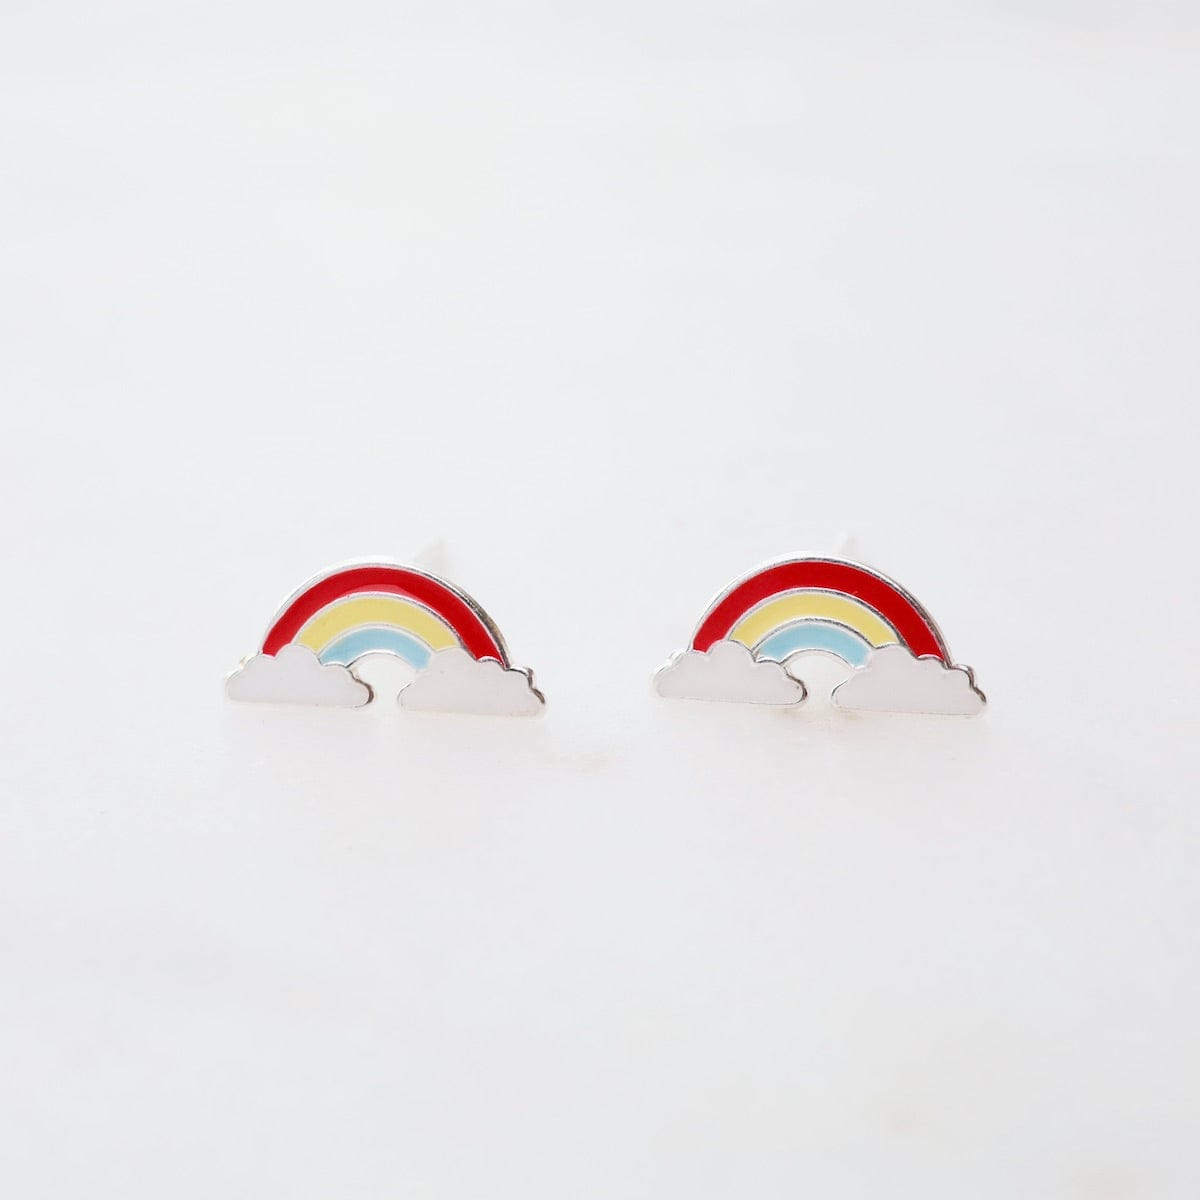 EAR Enamel Rainbow in Clouds Post Earrings - Red, Yellow, & Light Blue